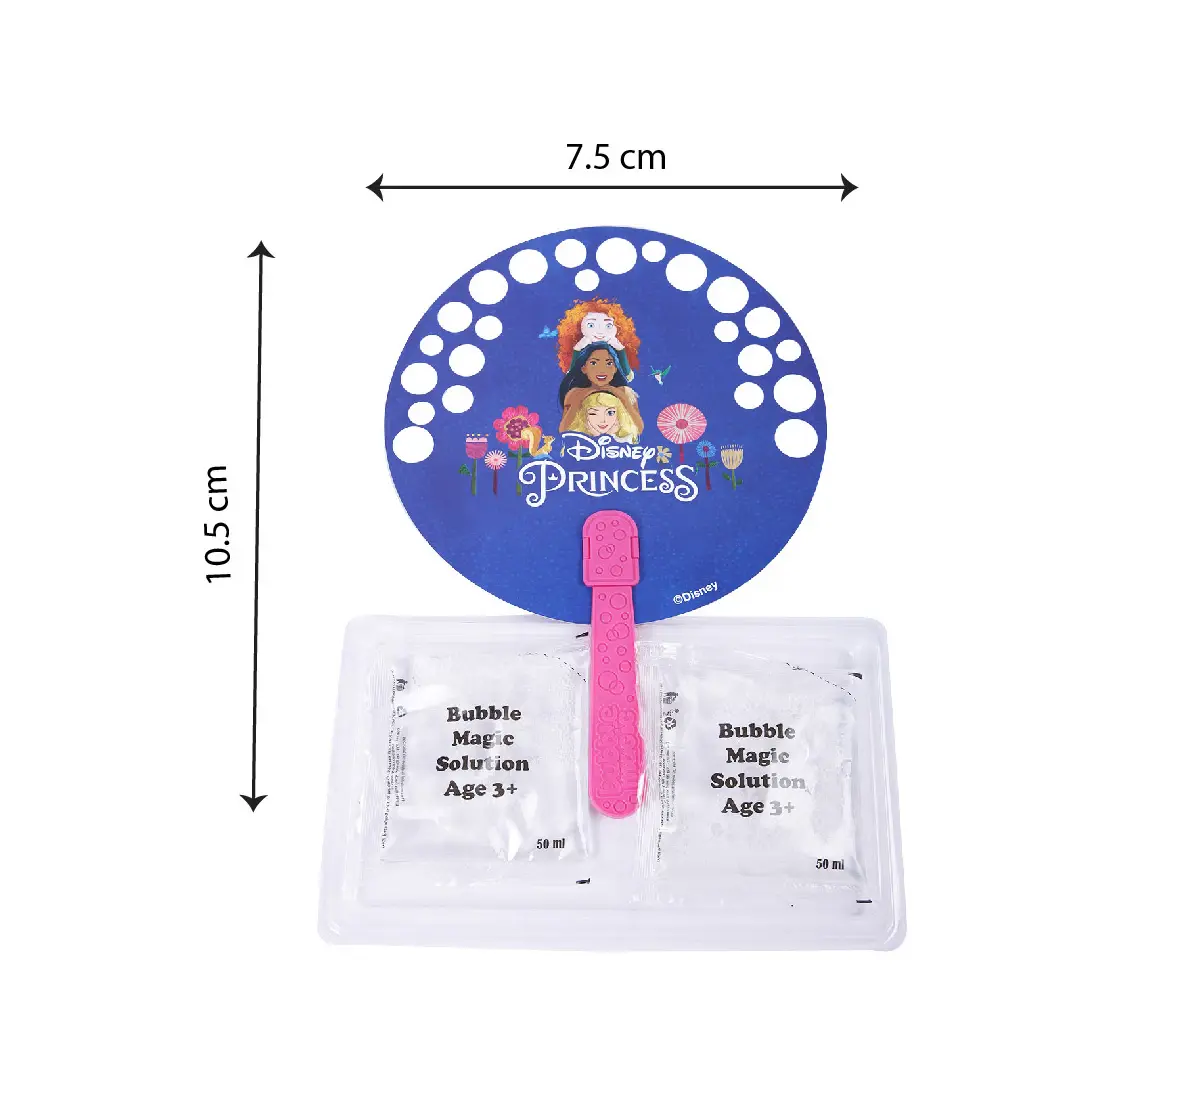 Bubble Magic Fan Bubs Disney Princesses Theme Bubble Solution Assortment 2 For Kids of Age 3Y+, Multicolour